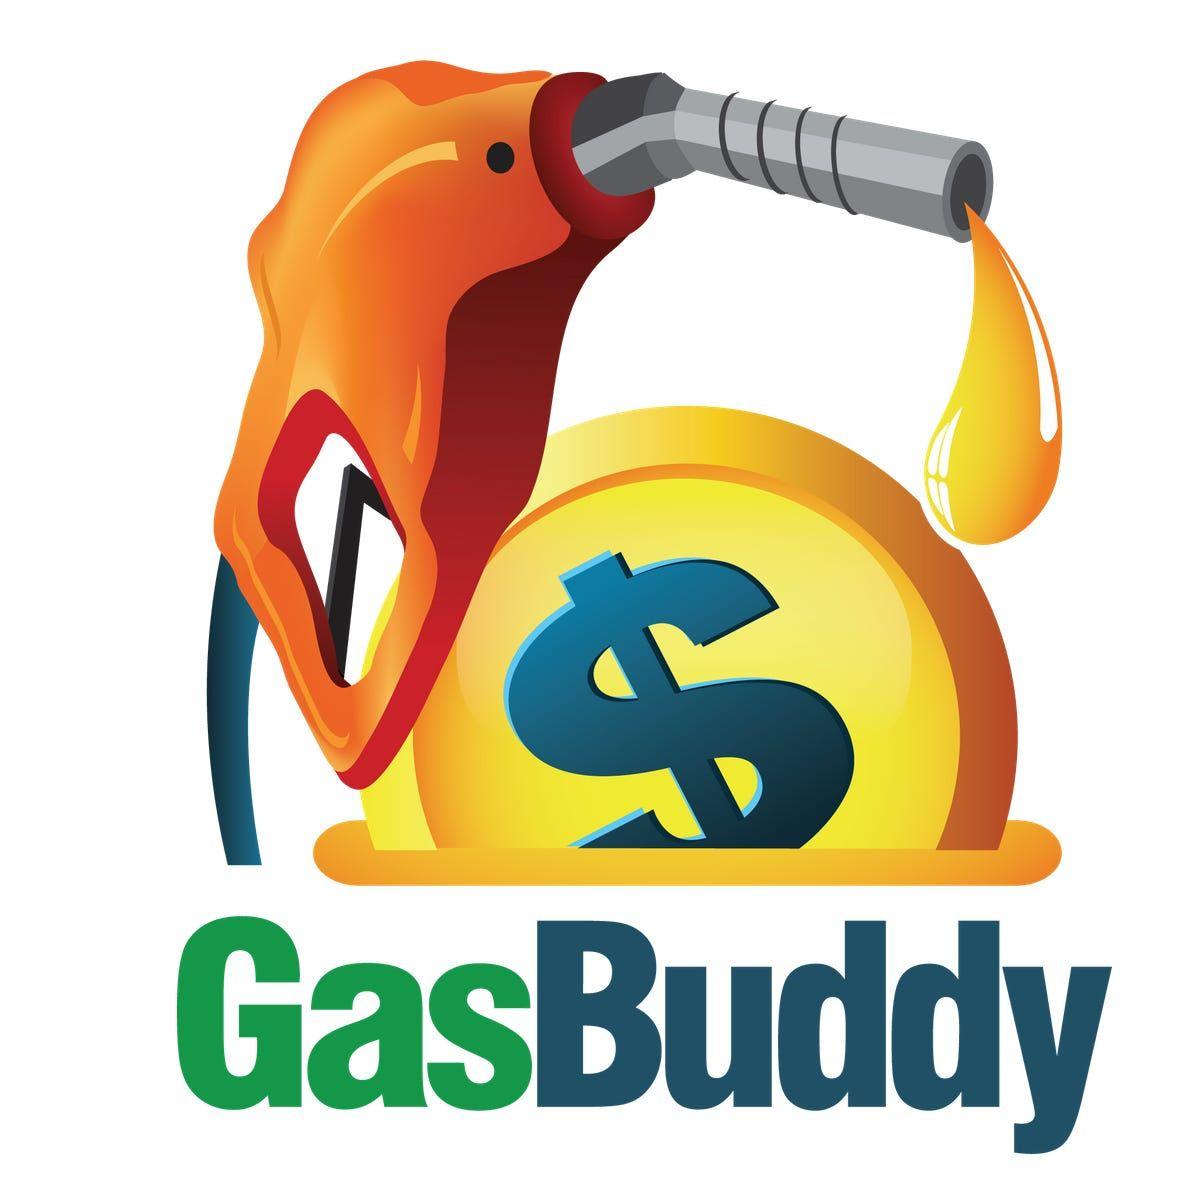 GasBuddy Logo - GasBuddy is a handy way to cut gas spending